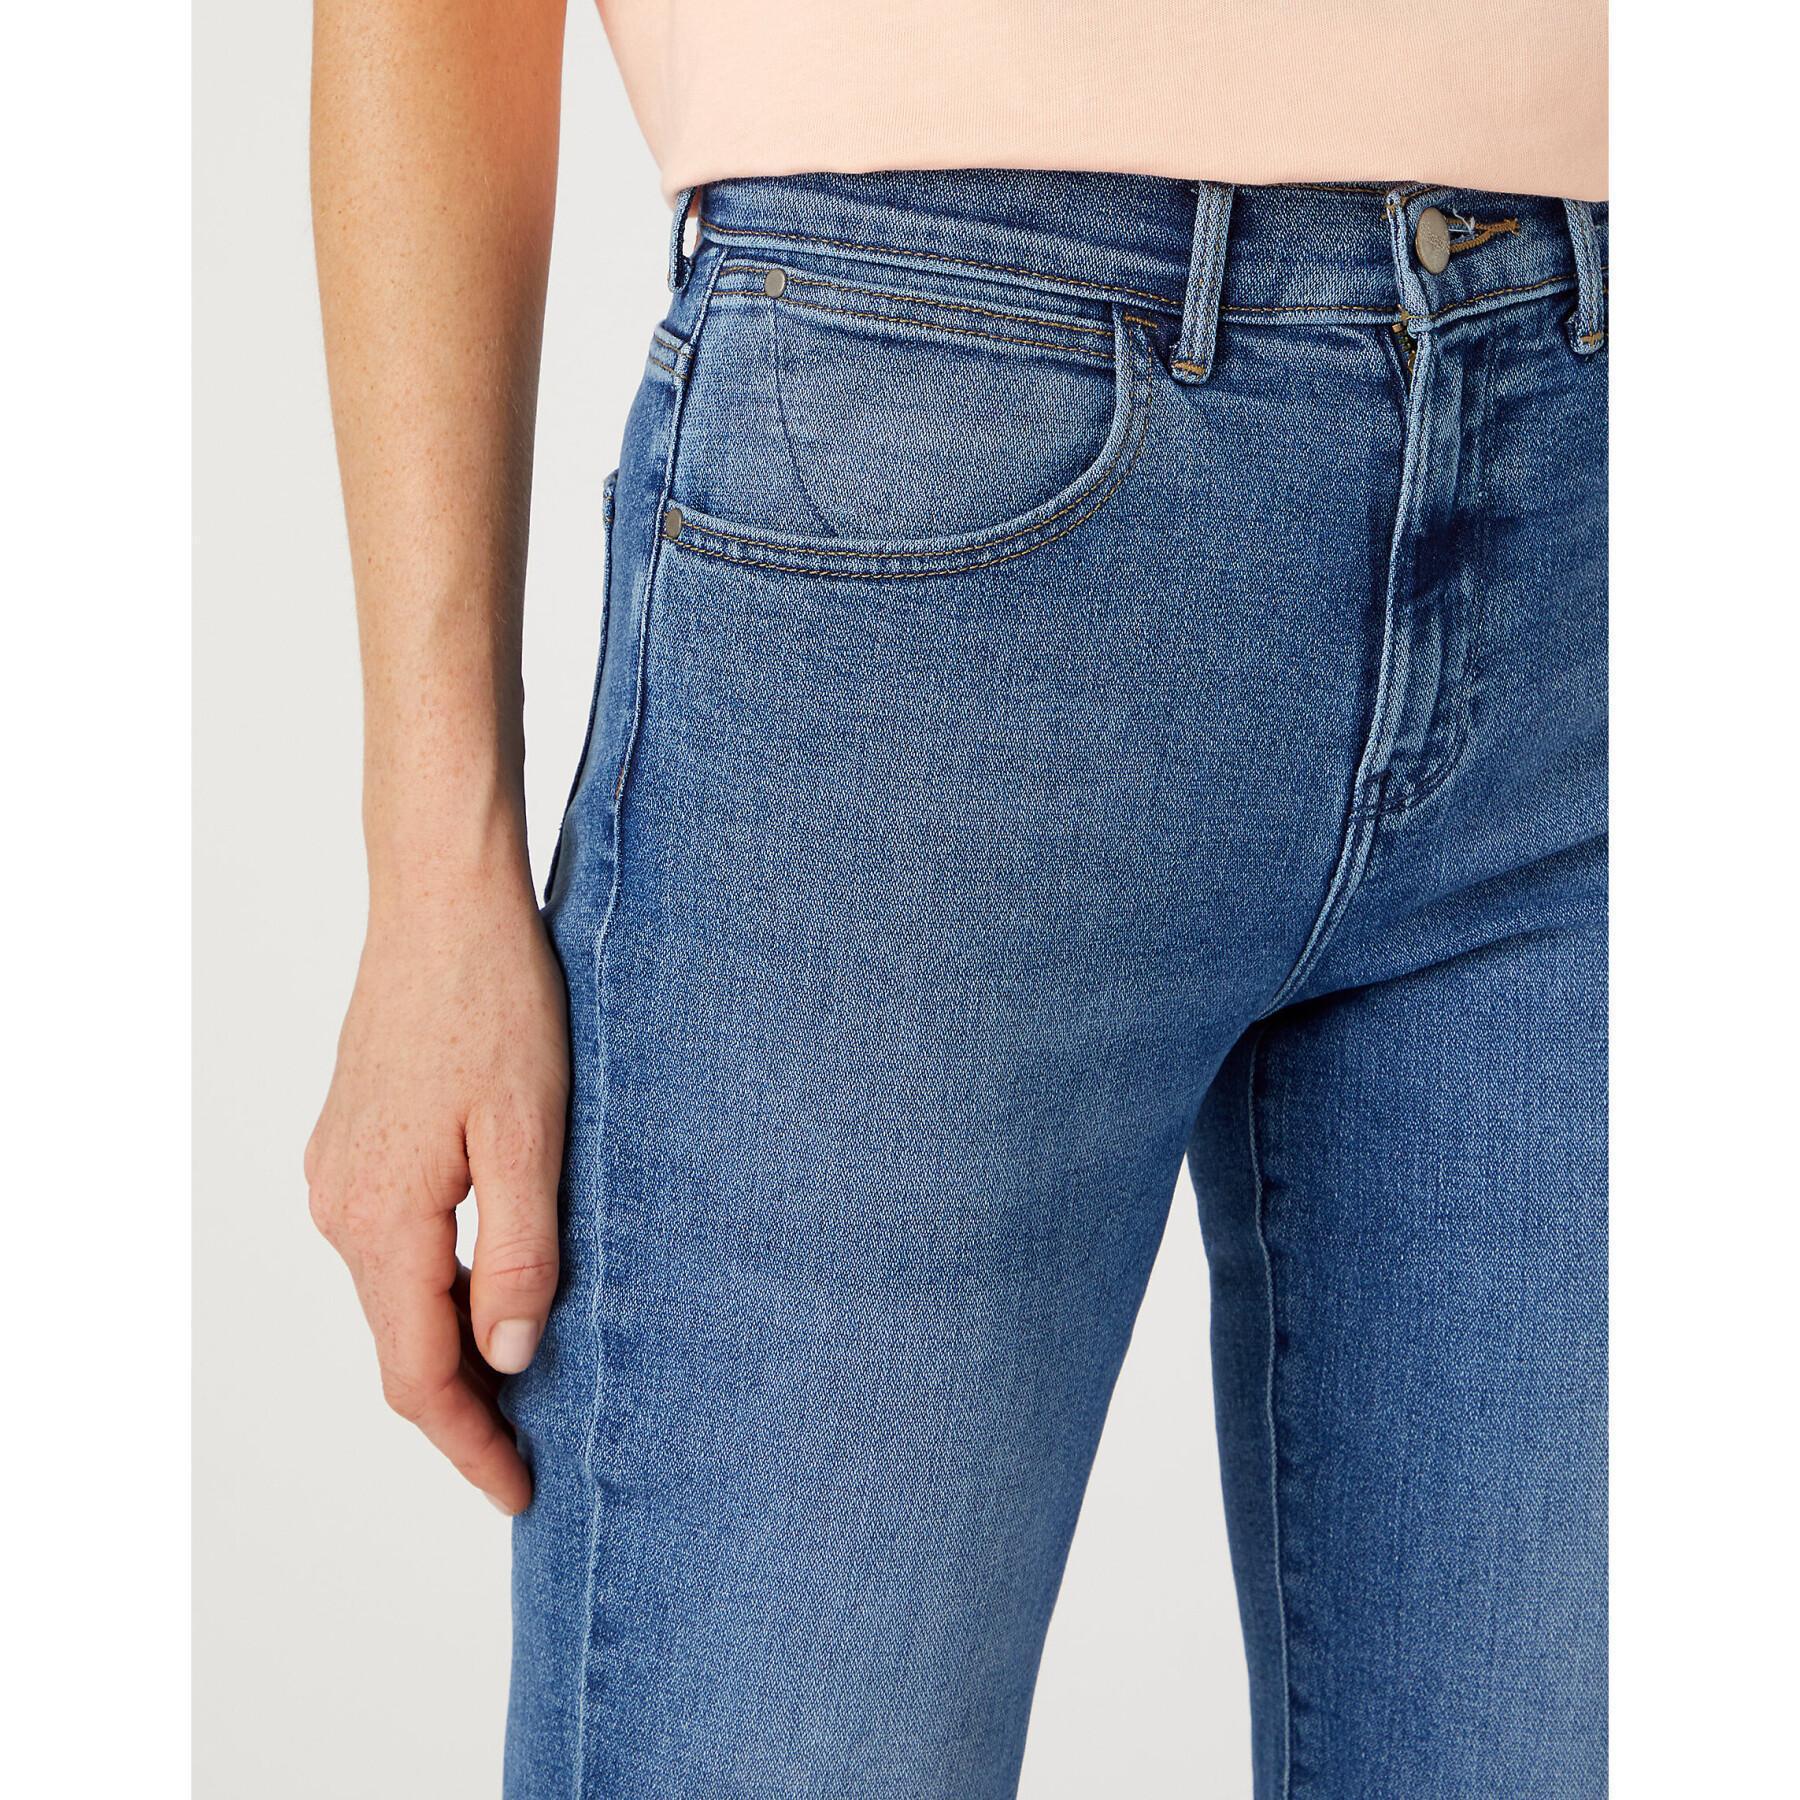 Jeans woman Wrangler Bootcut